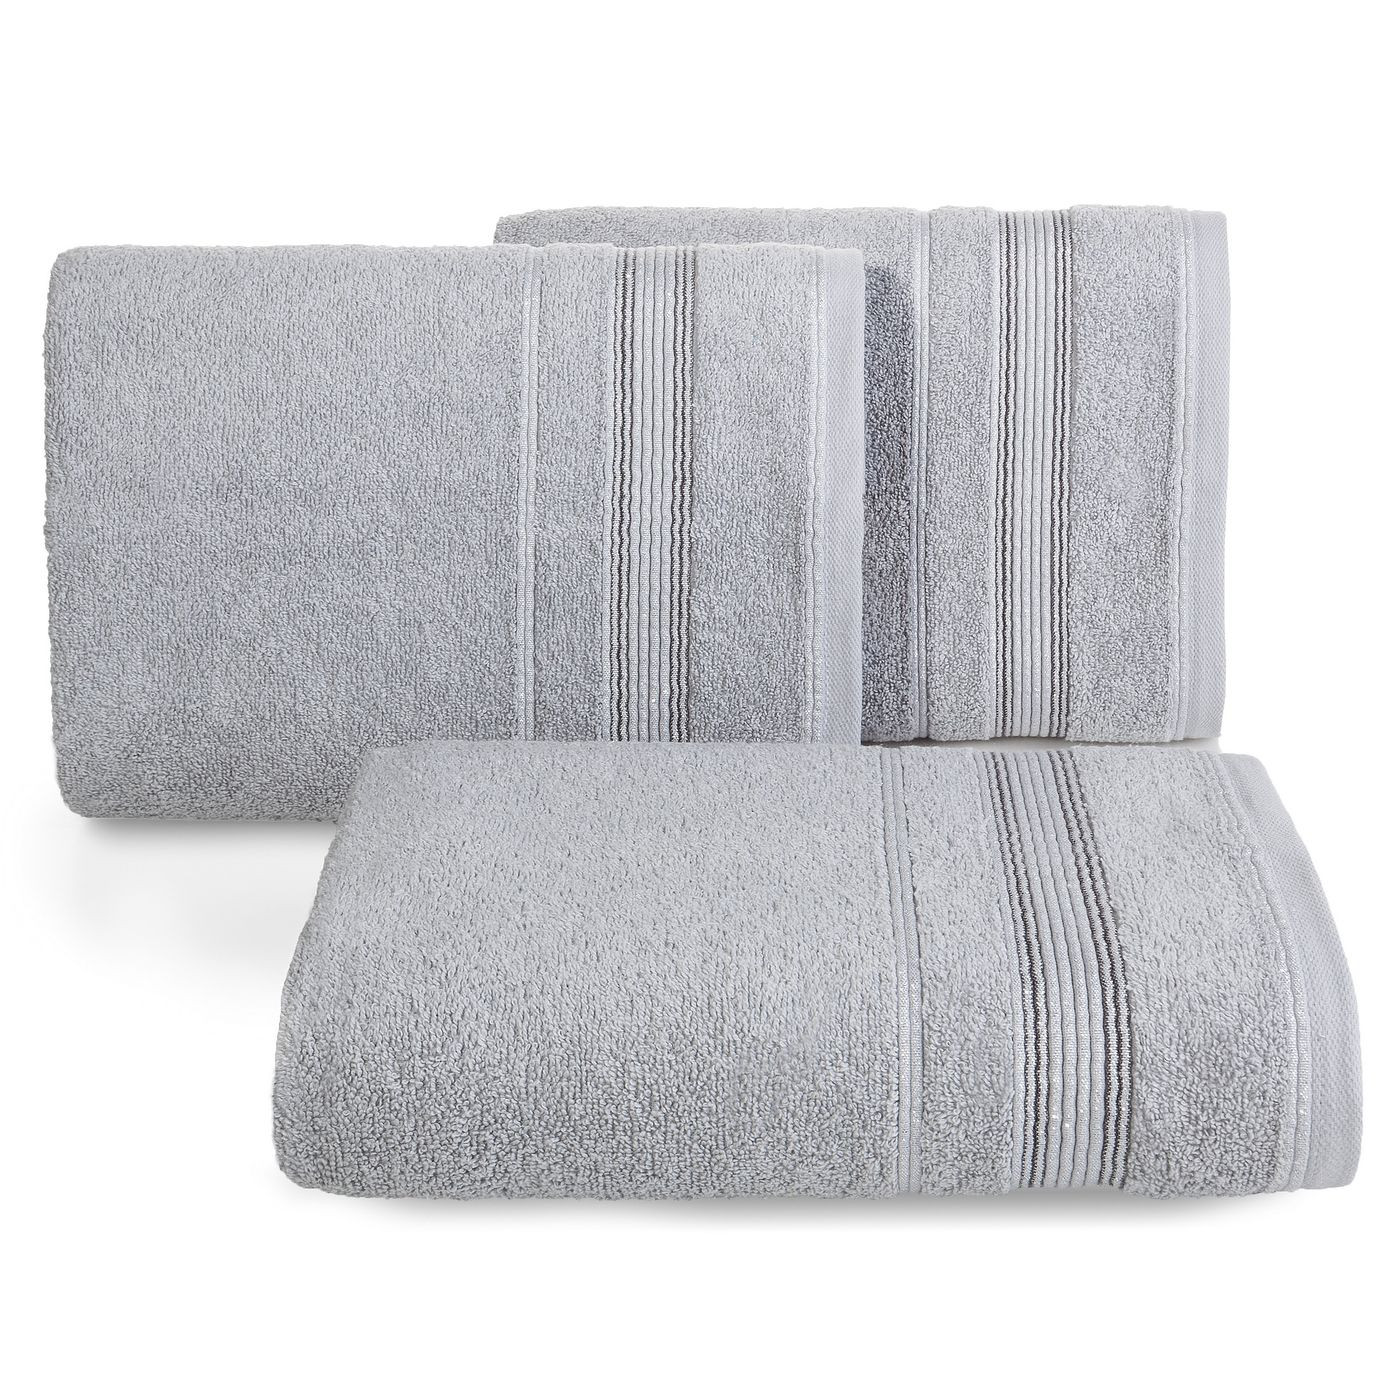 Ręcznik z bawełny z bordiurą podkreśloną srebrną nitką 70x140cm